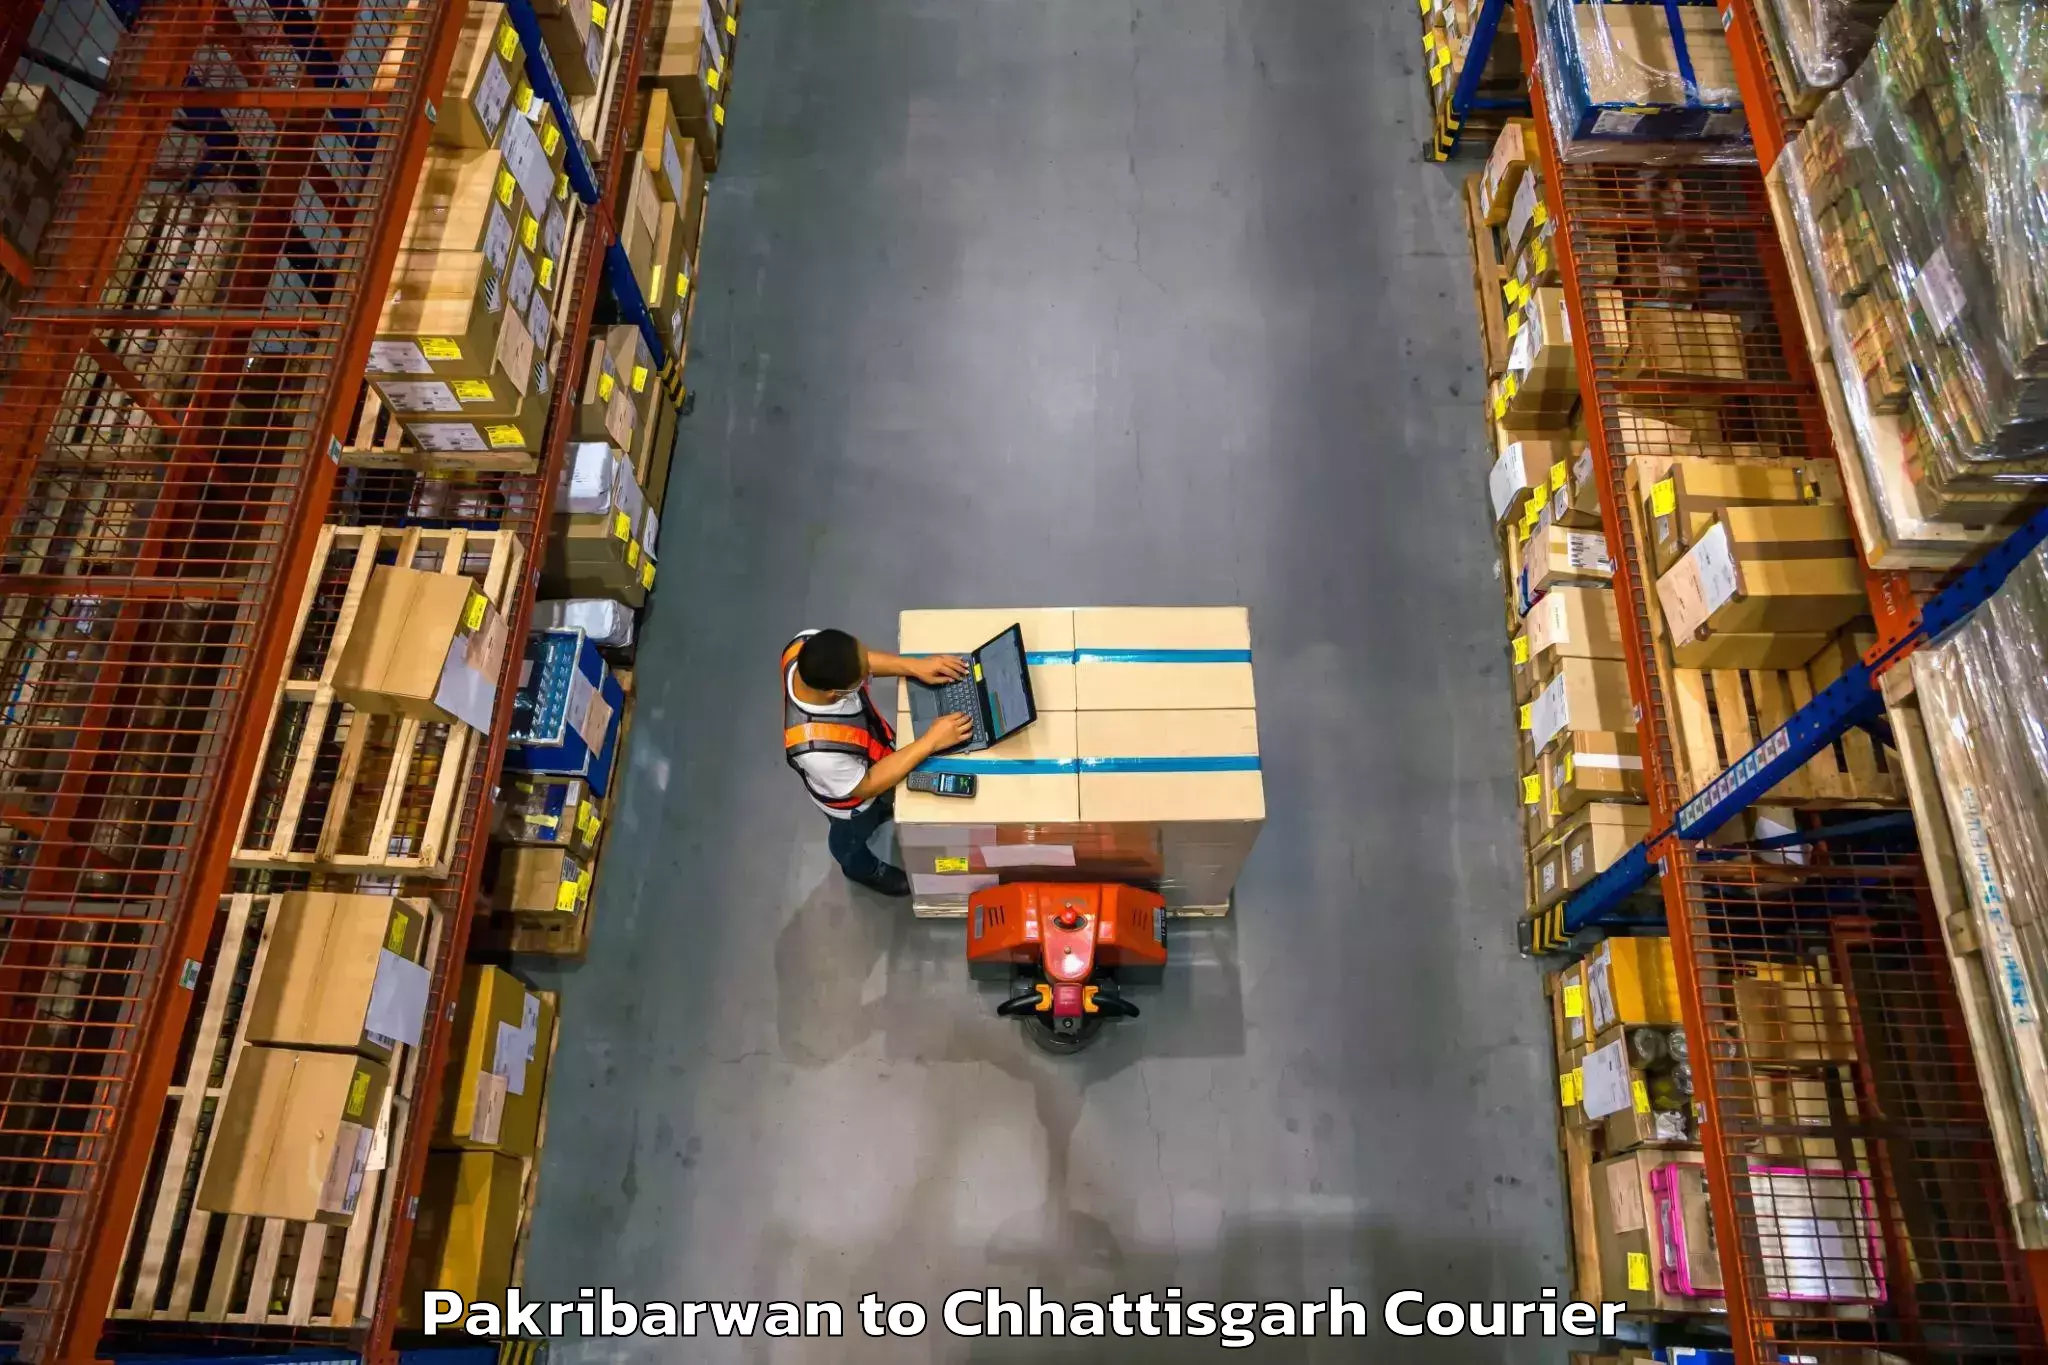 Customer-oriented courier services in Pakribarwan to Chhattisgarh